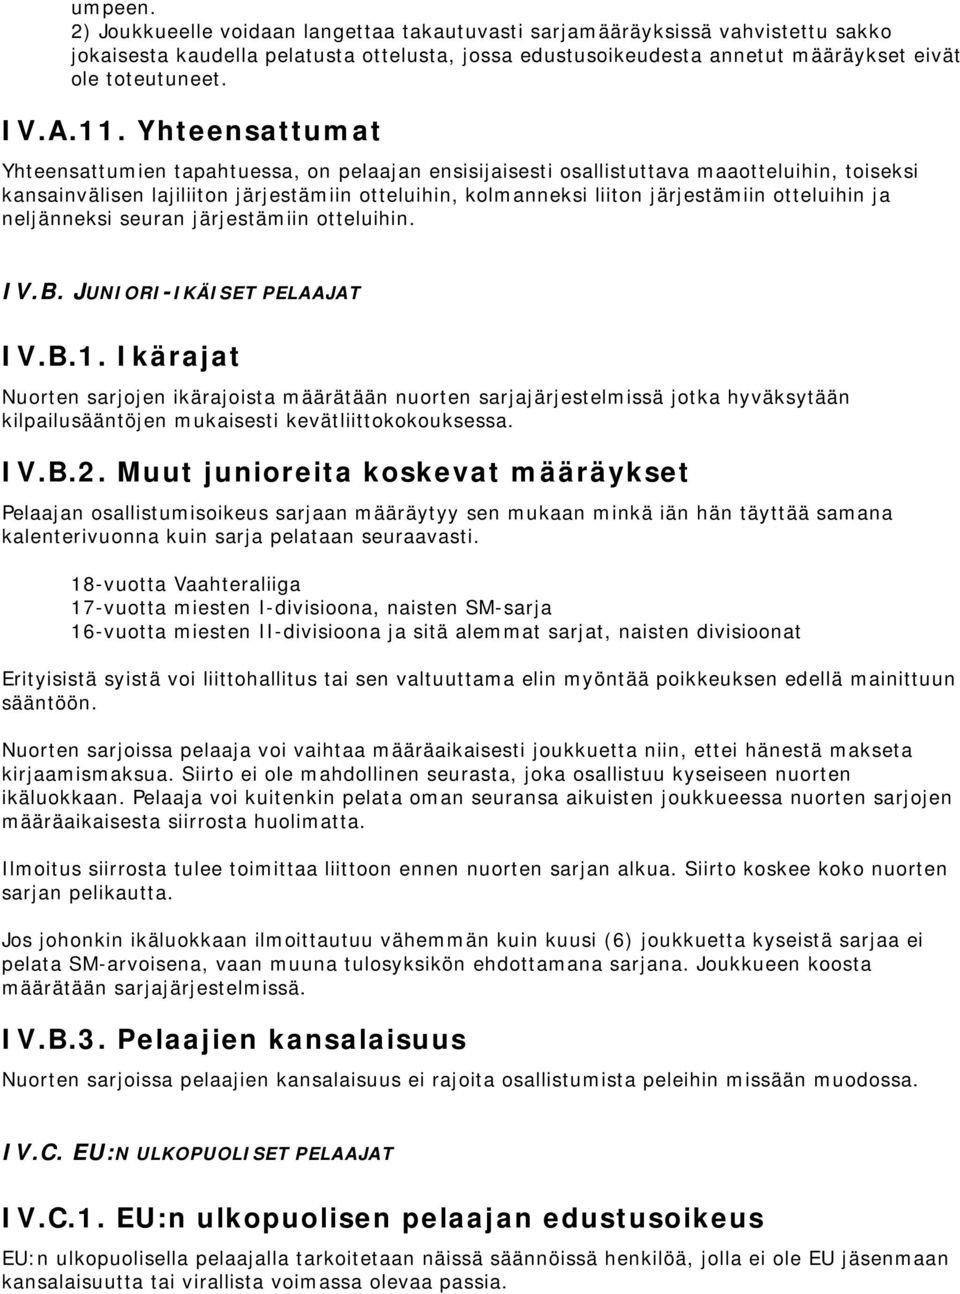 otteluihin ja neljänneksi seuran järjestämiin otteluihin. IV.B. JUNIORI-IKÄISET PELAAJAT IV.B.1.